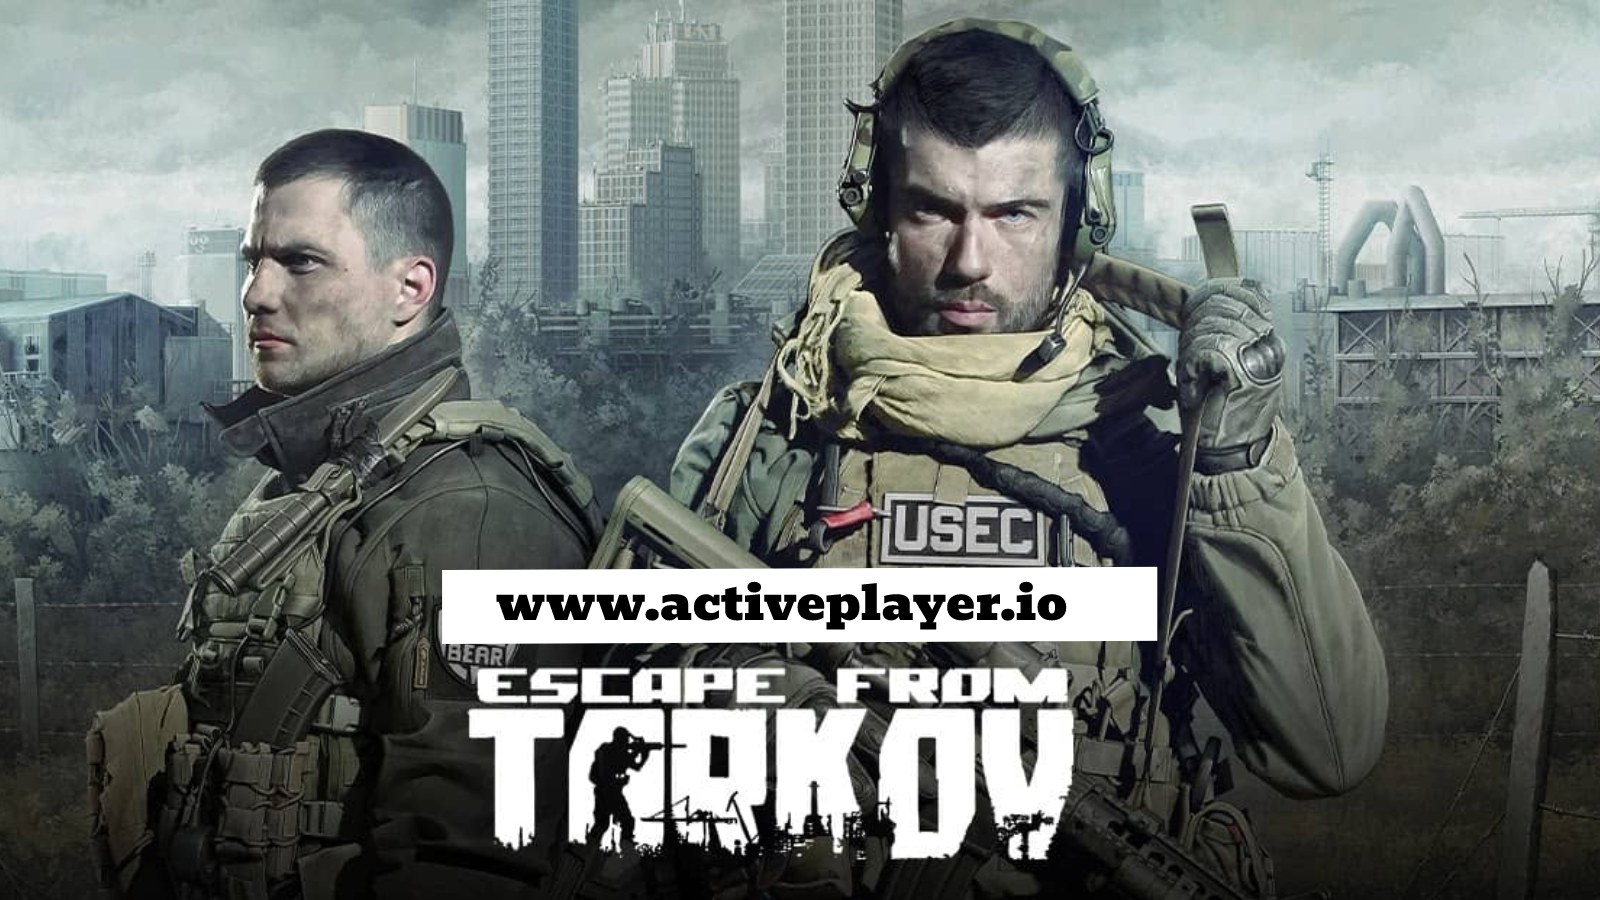 Escape from Tarkov official page - Escape from Tarkov